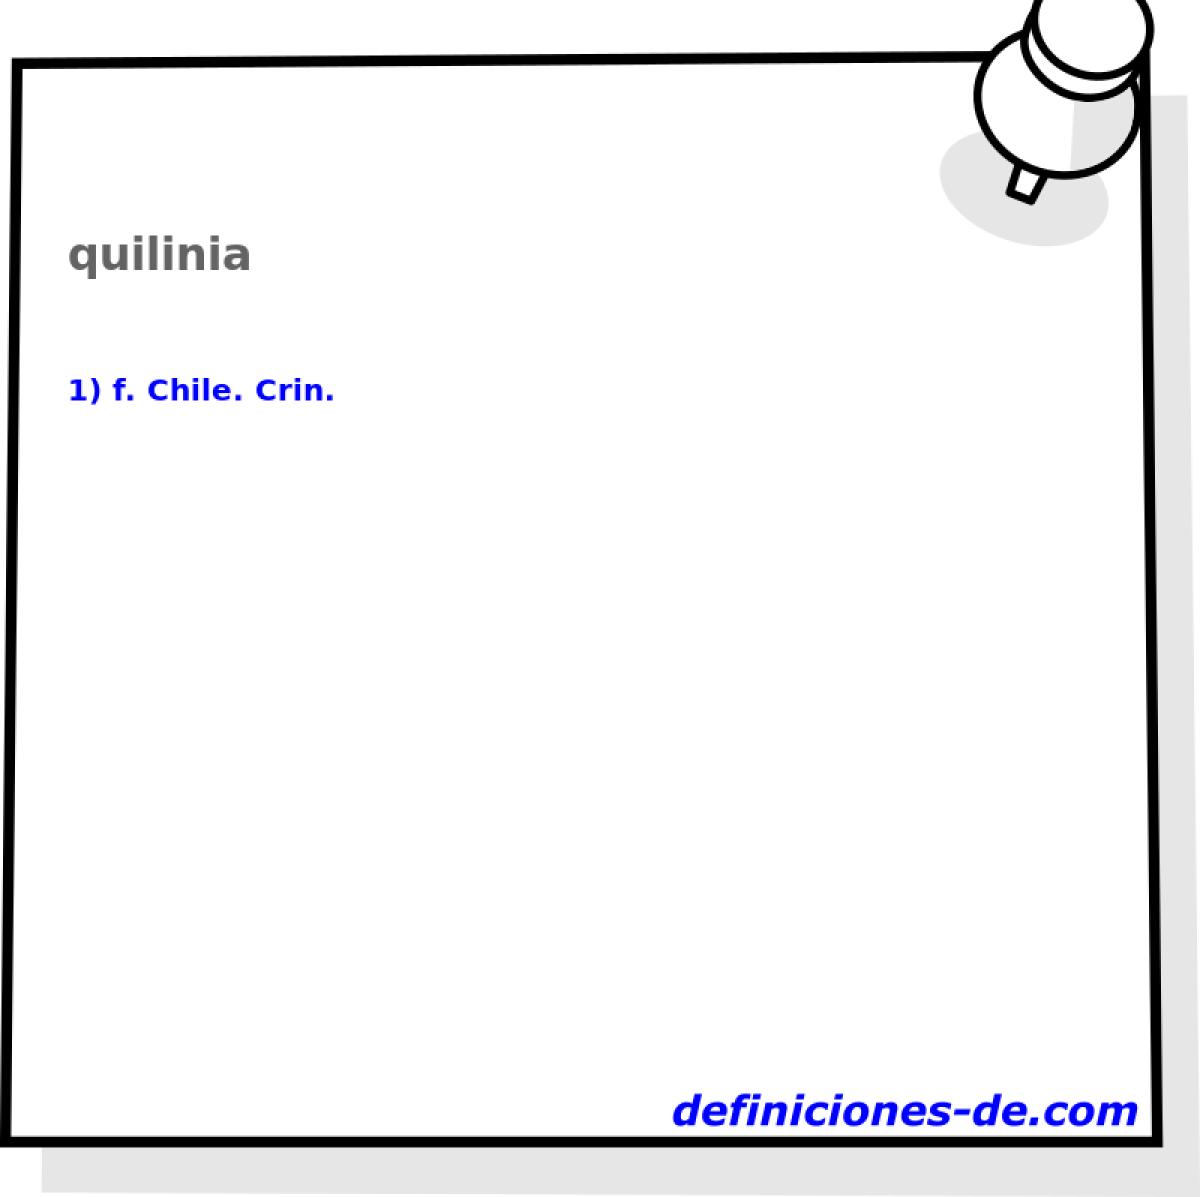 quilinia 